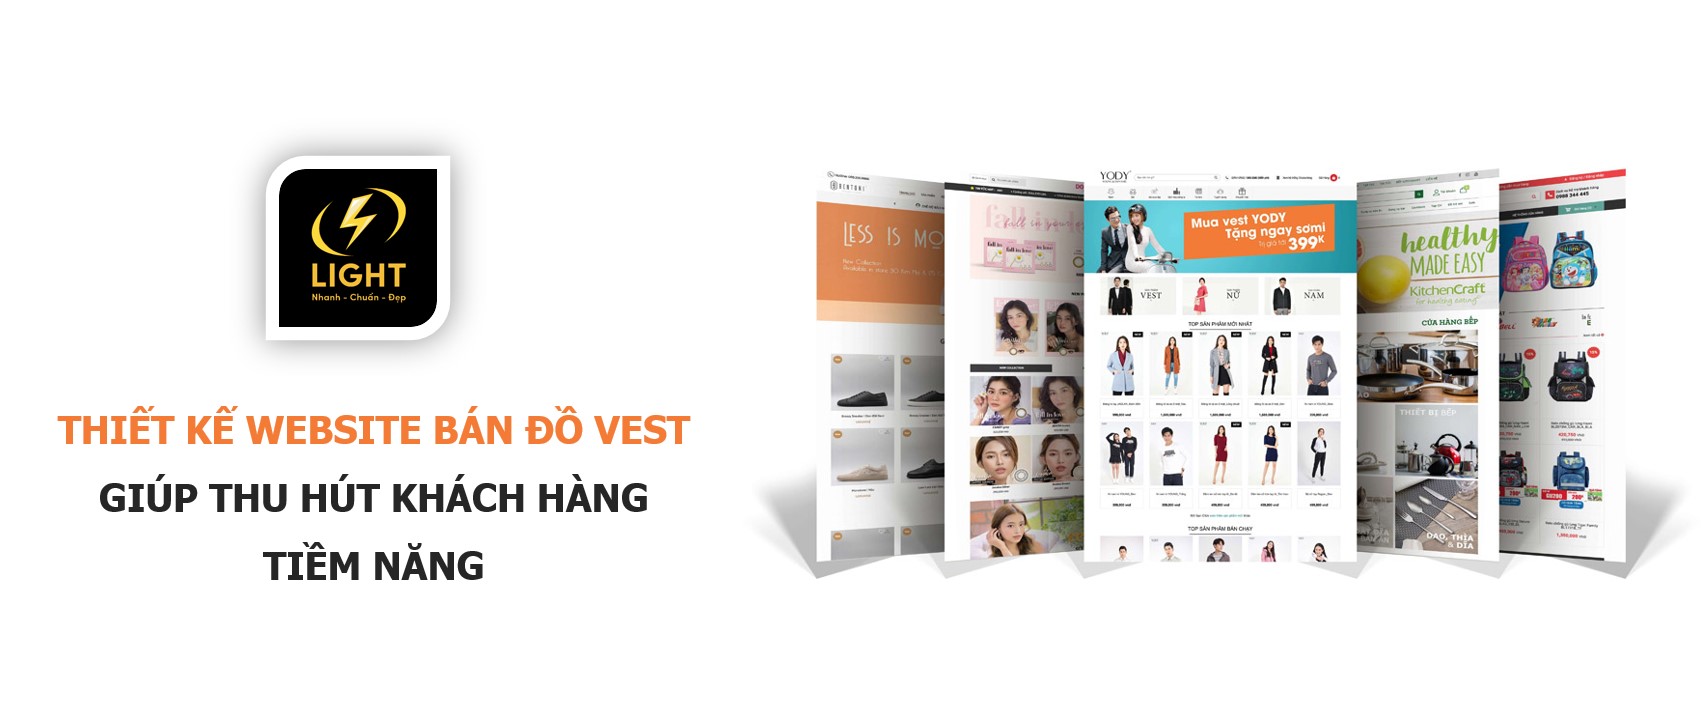 Thiết kế website bán vest giúp thu hút khách hàng tiềm năng cùng LIGHT